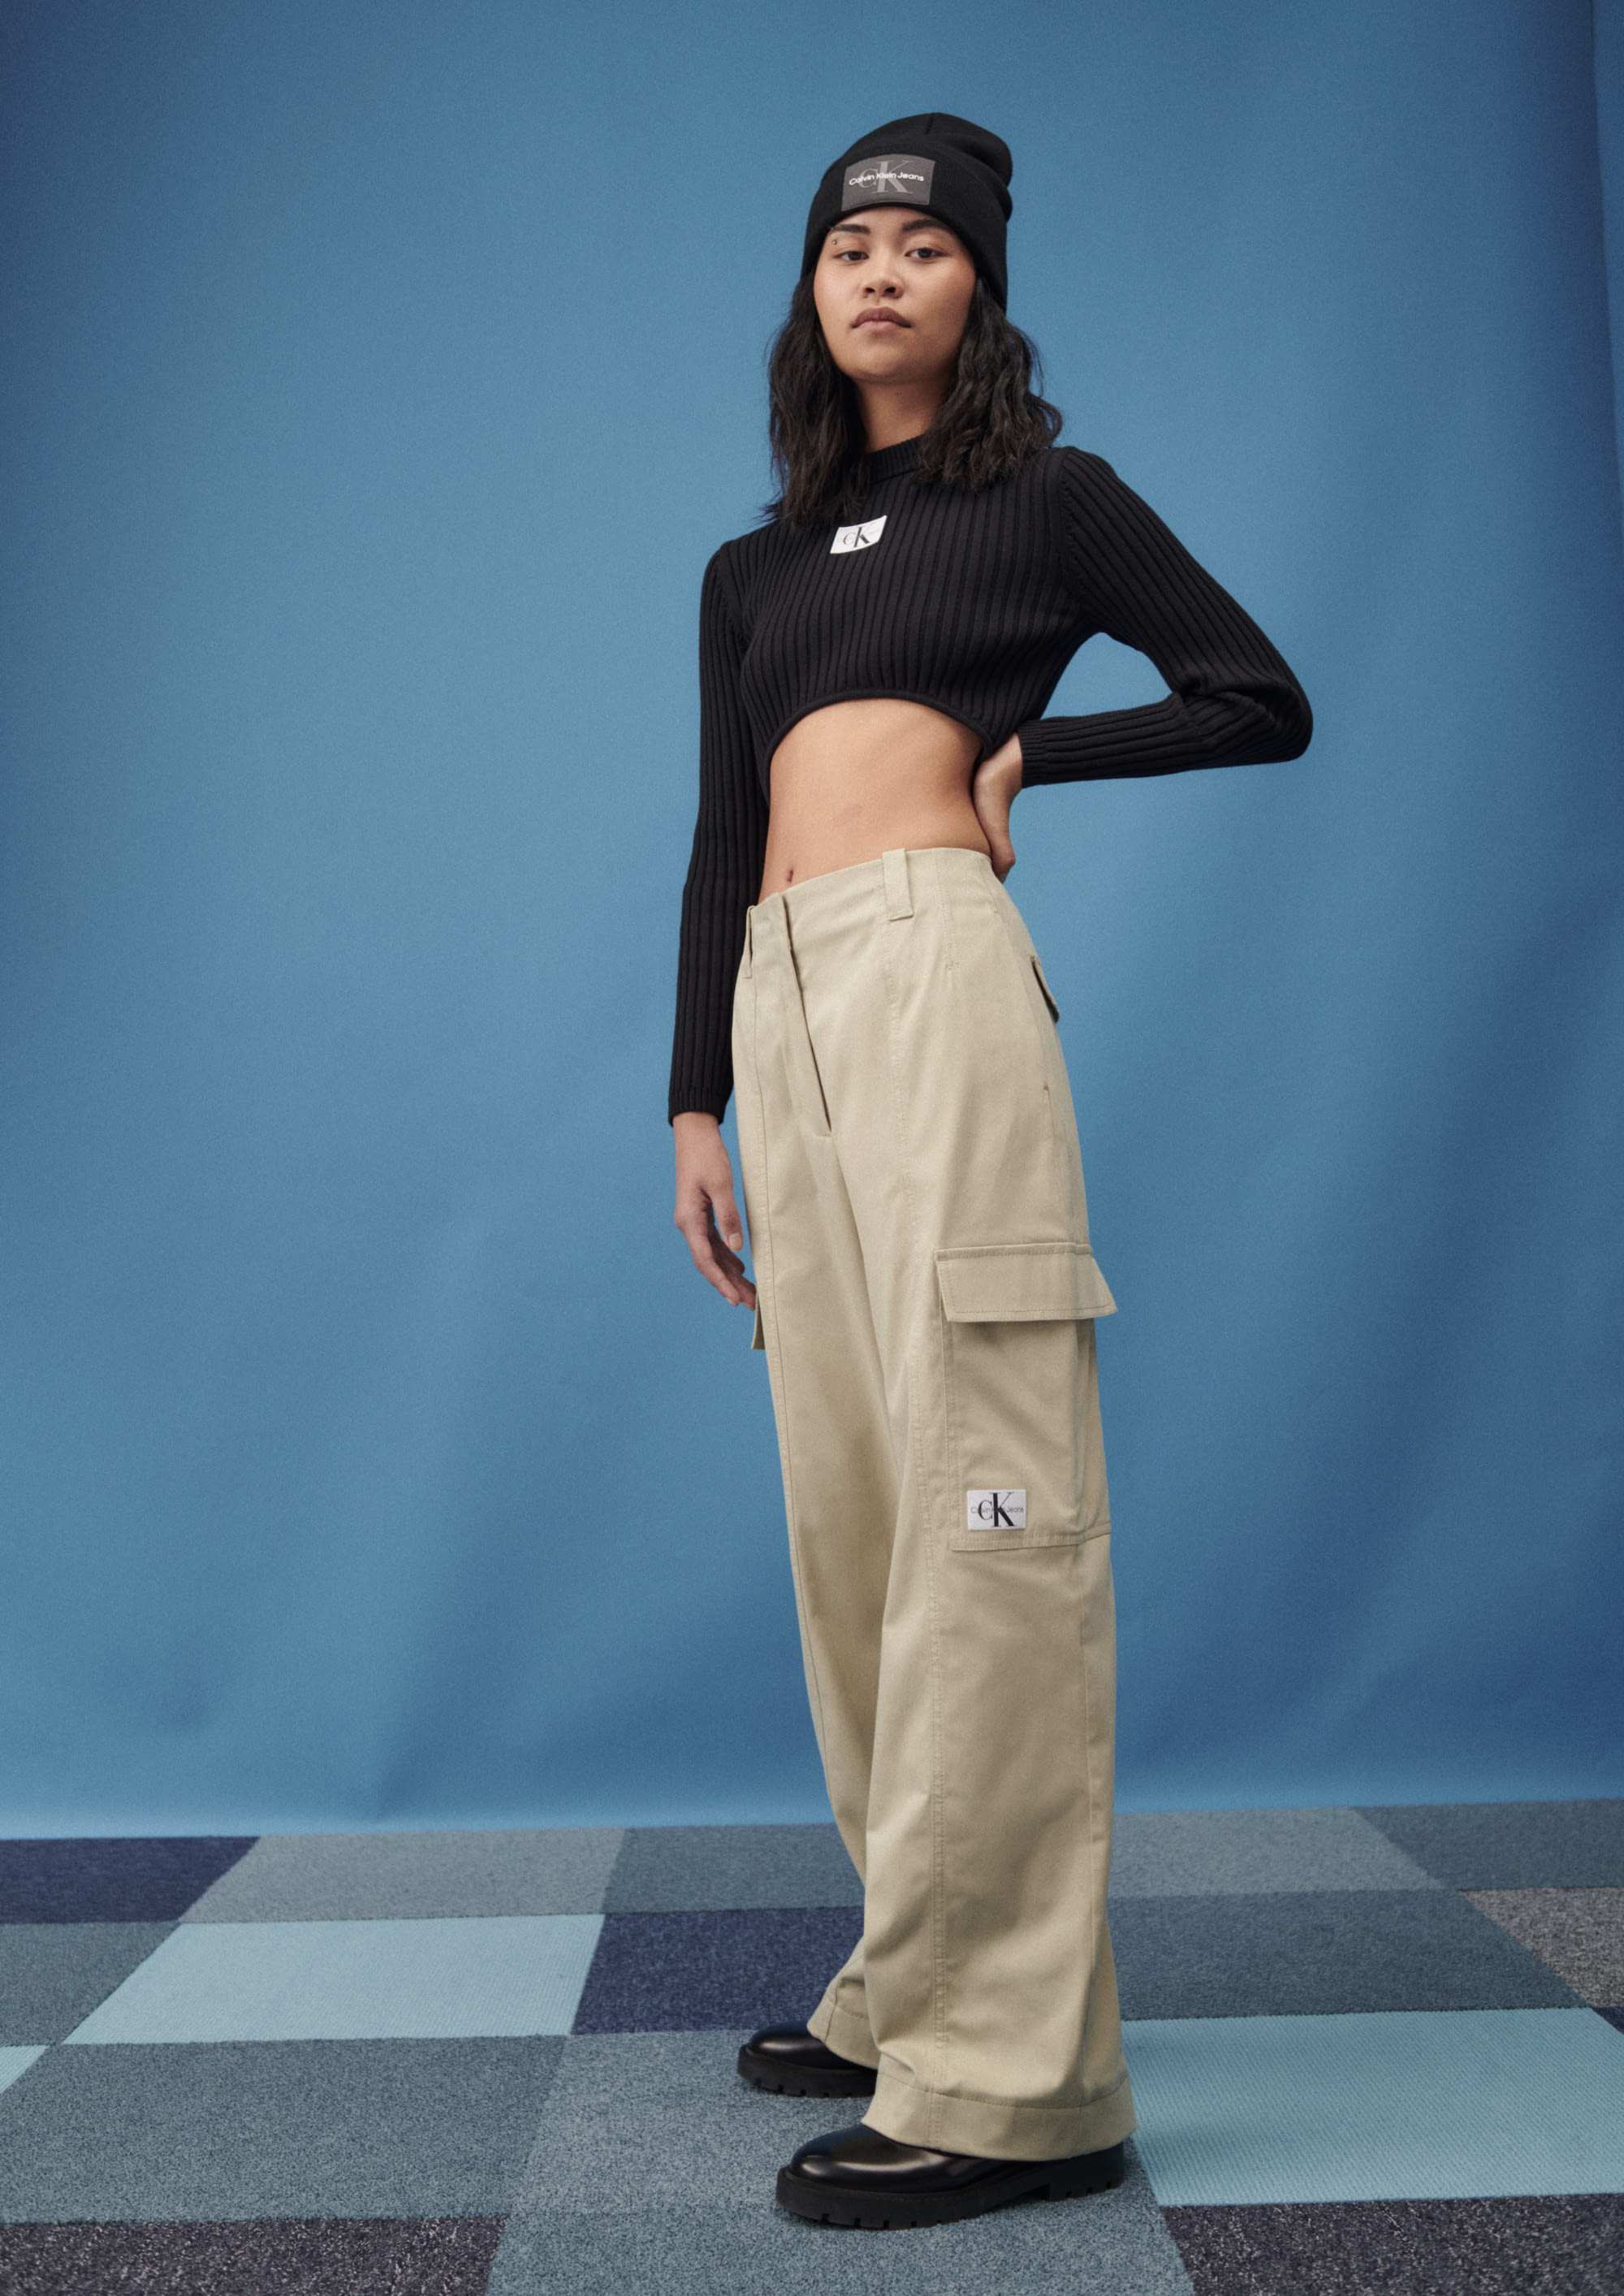 Calvin Klein Jeans PF22 womenswear #11 - Tagwalk: The Fashion Search Engine